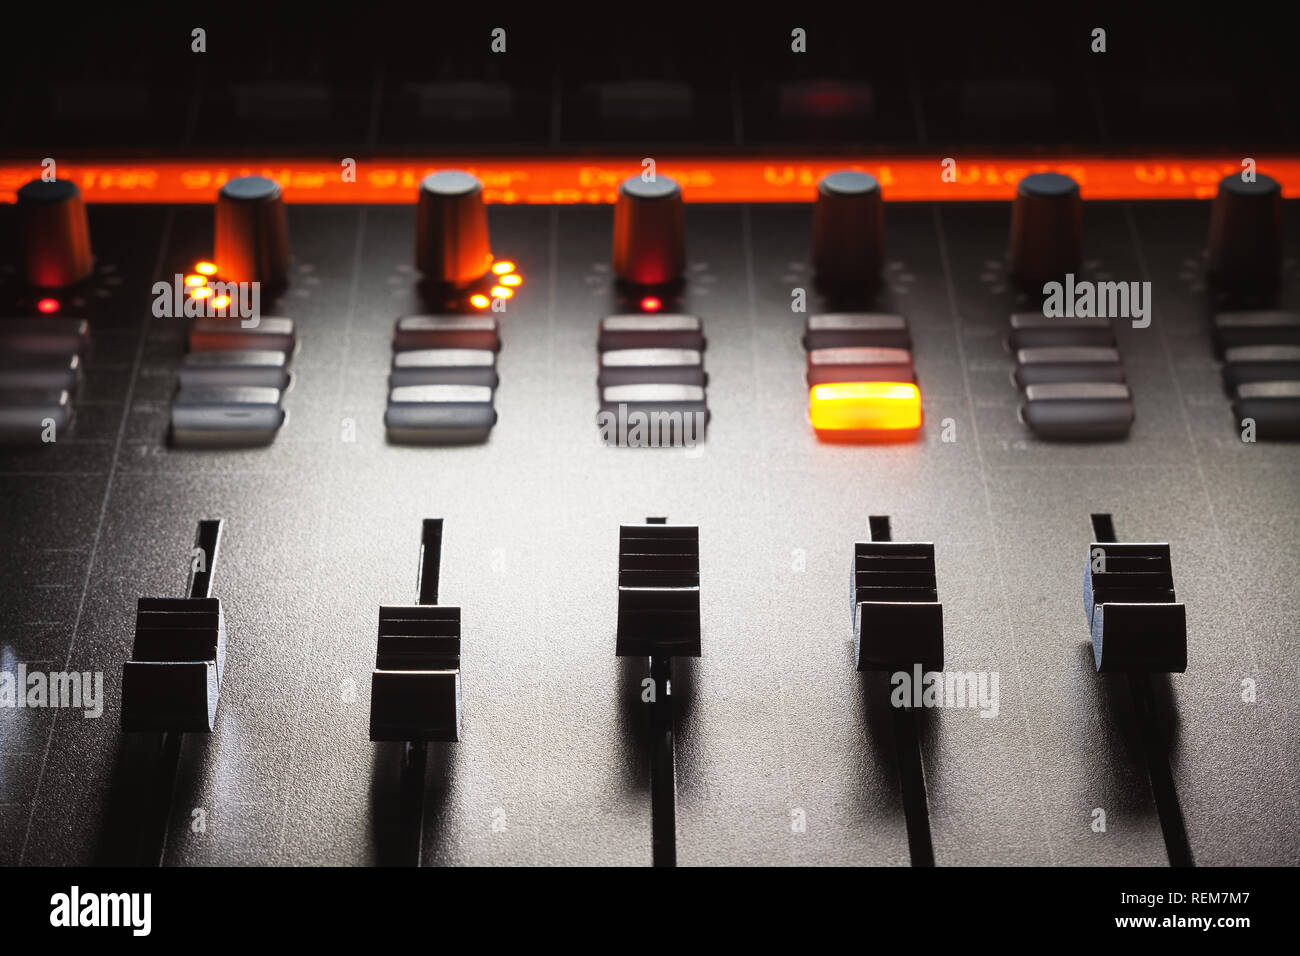 Fader eines modernen Mixing Console, Musik Studio equipment Details. Stockfoto